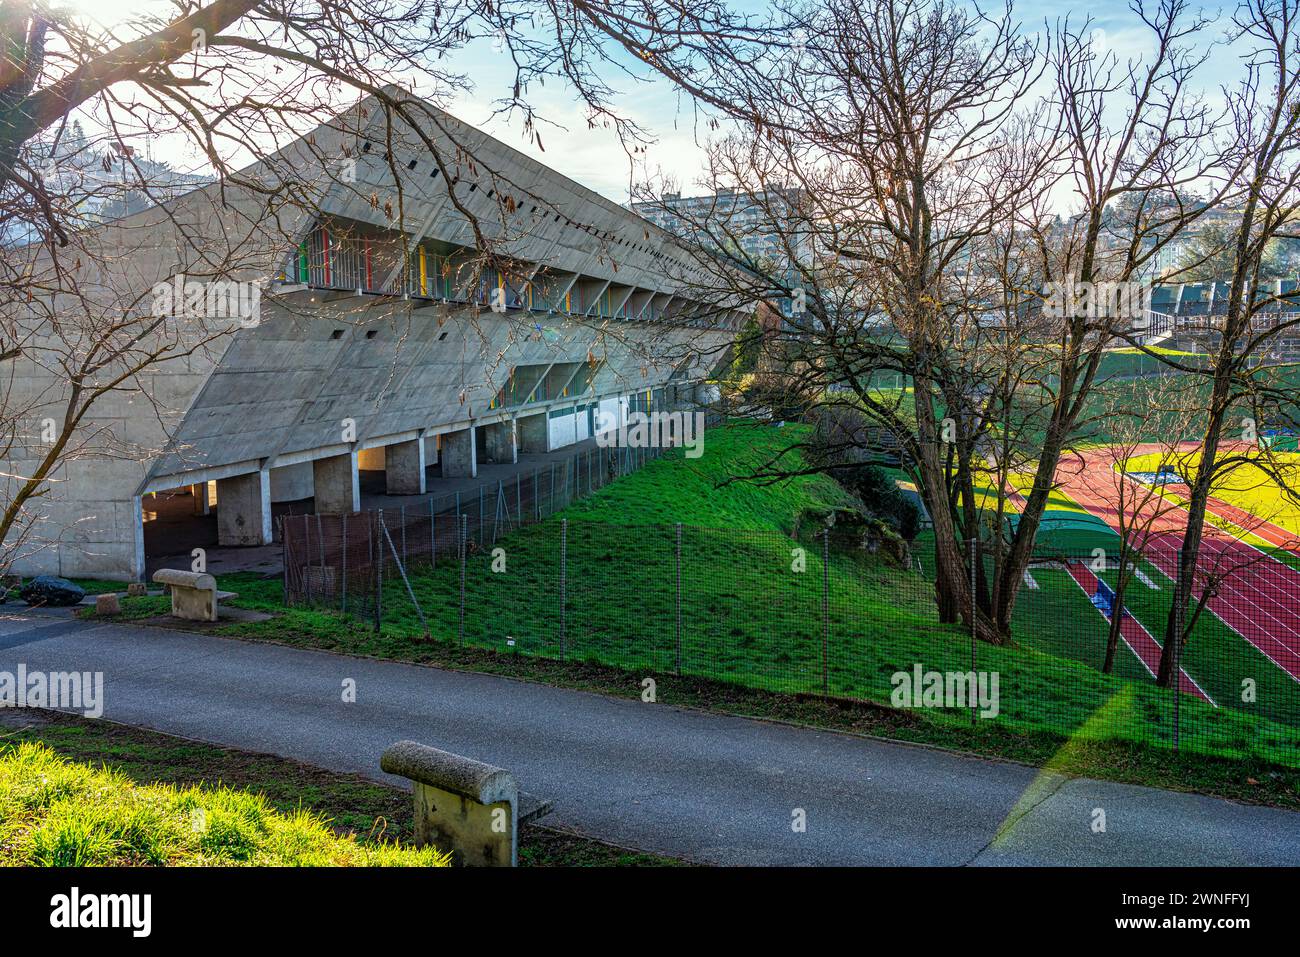 La Maison de la Culture di Firminy, dell'architetto le Corbusier, è entrata a far parte della rete internazionale di siti riconosciuti dalle Nazioni Unite. Firminy Foto Stock